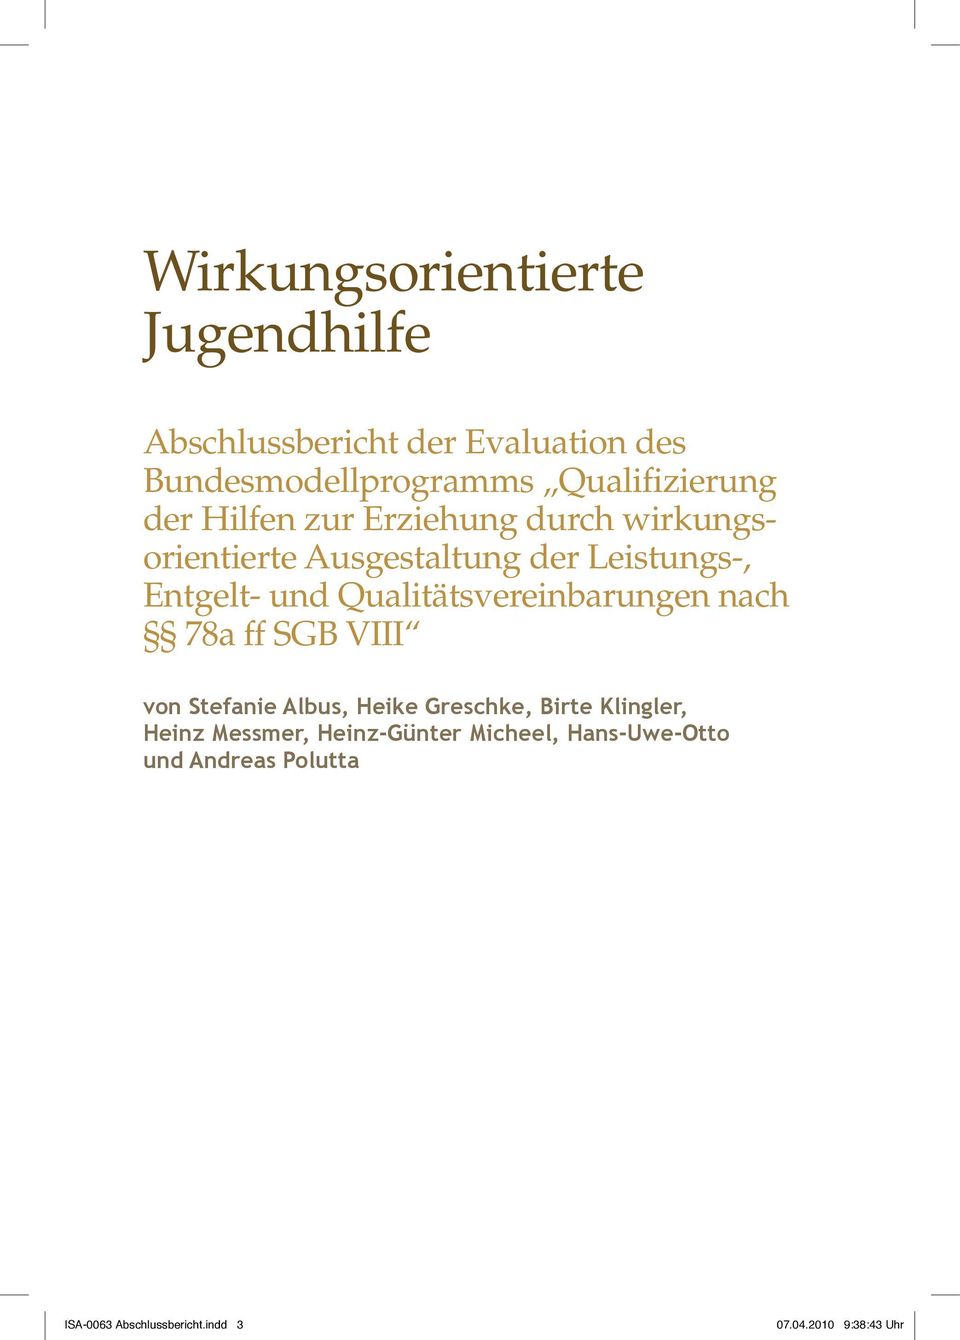 Qualitätsvereinbarungen nach 78a ff SGB VIII von Stefanie Albus, Heike Greschke, Birte Klingler, Heinz